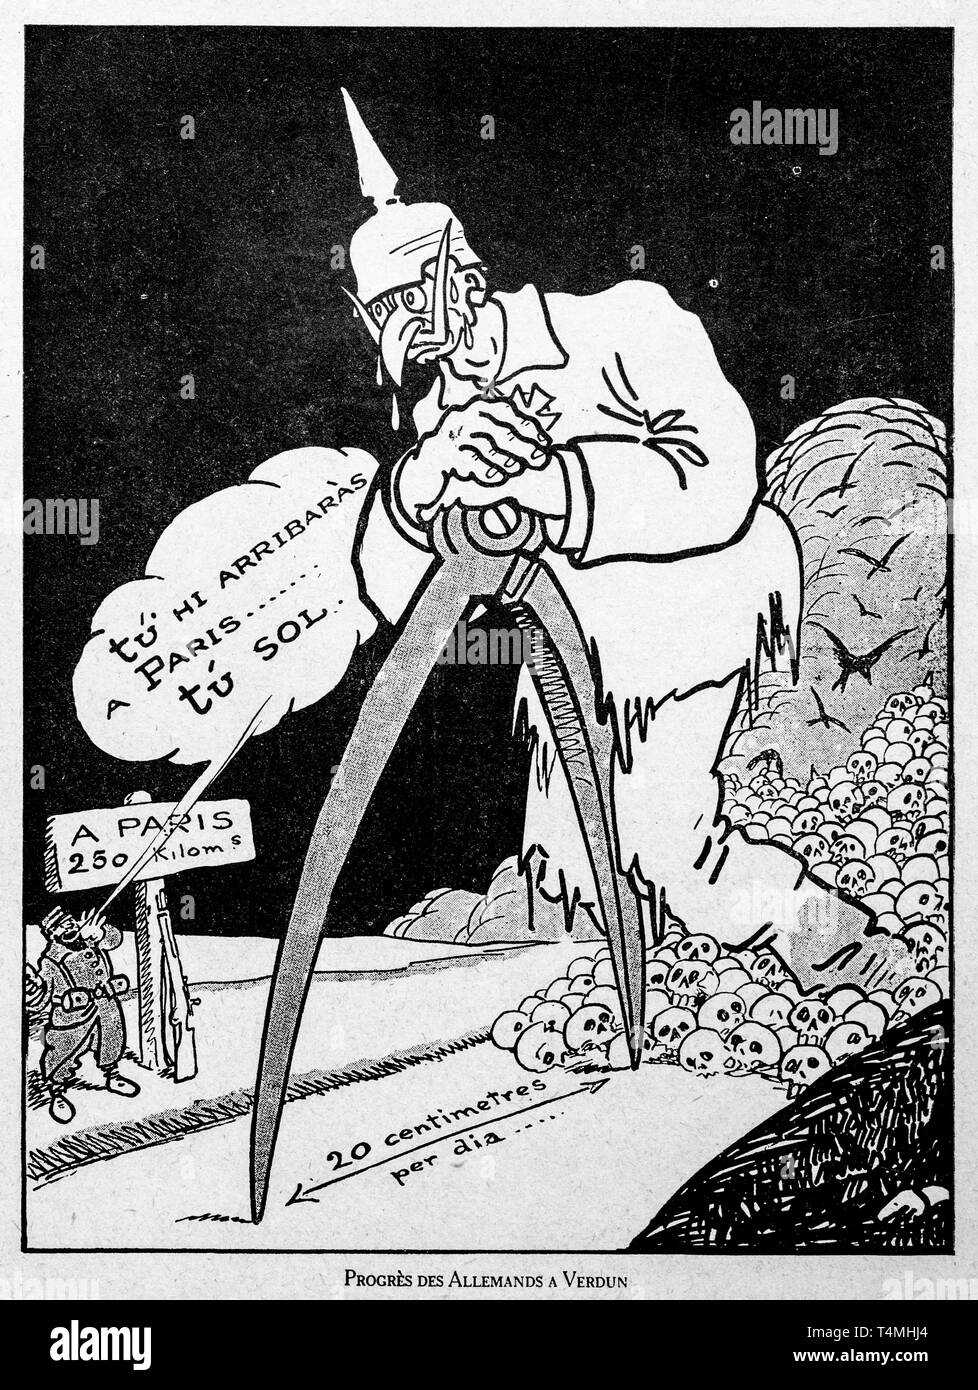 Progrès des Allemands à Verdun, WW1 caricatura che mostra il Kaiser Guglielmo II la misura con la bussola la progressione dell'esercito tedesco a fronte di Verdun in Francia Foto Stock